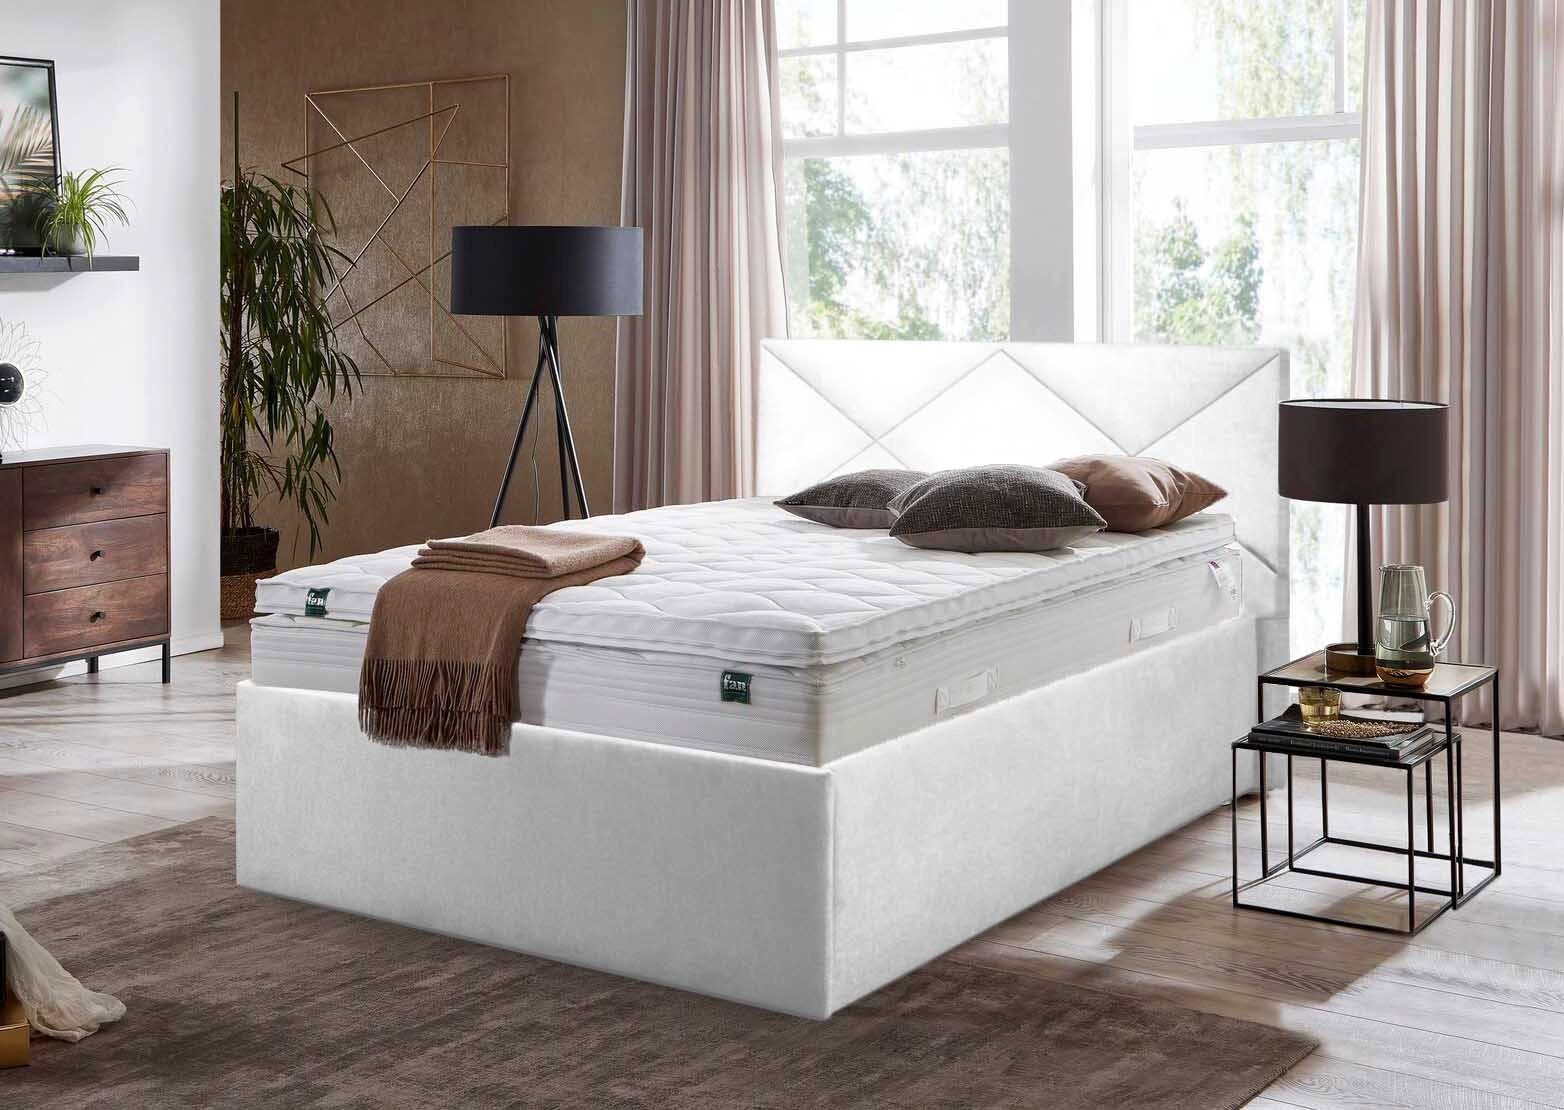 Halmon Schlafkomfort Betten Polsterbett Wels Weiß | Polsterbetten